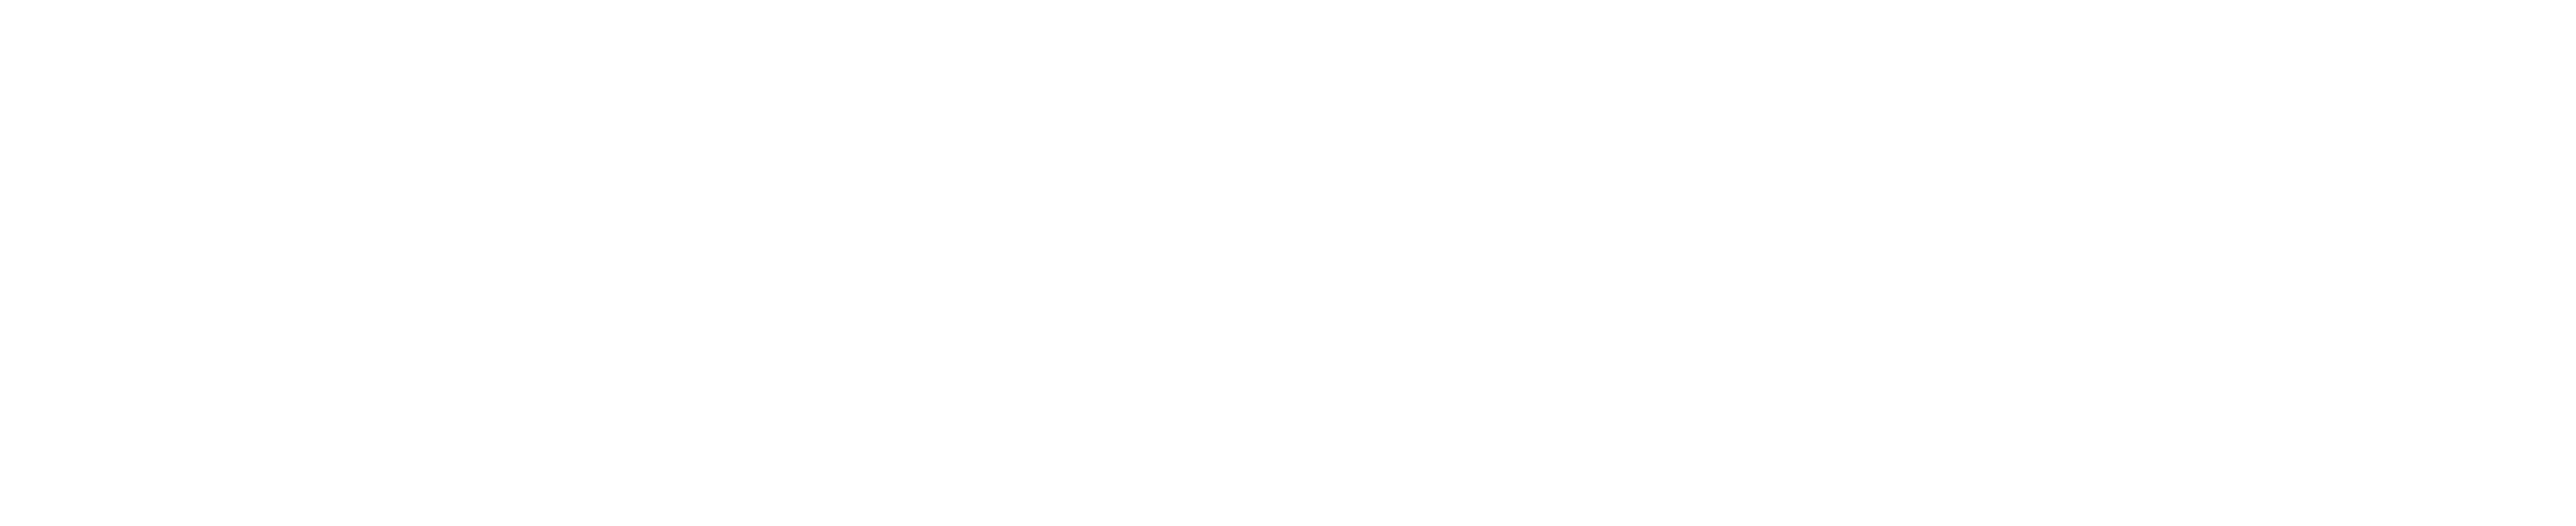 lasco white logo